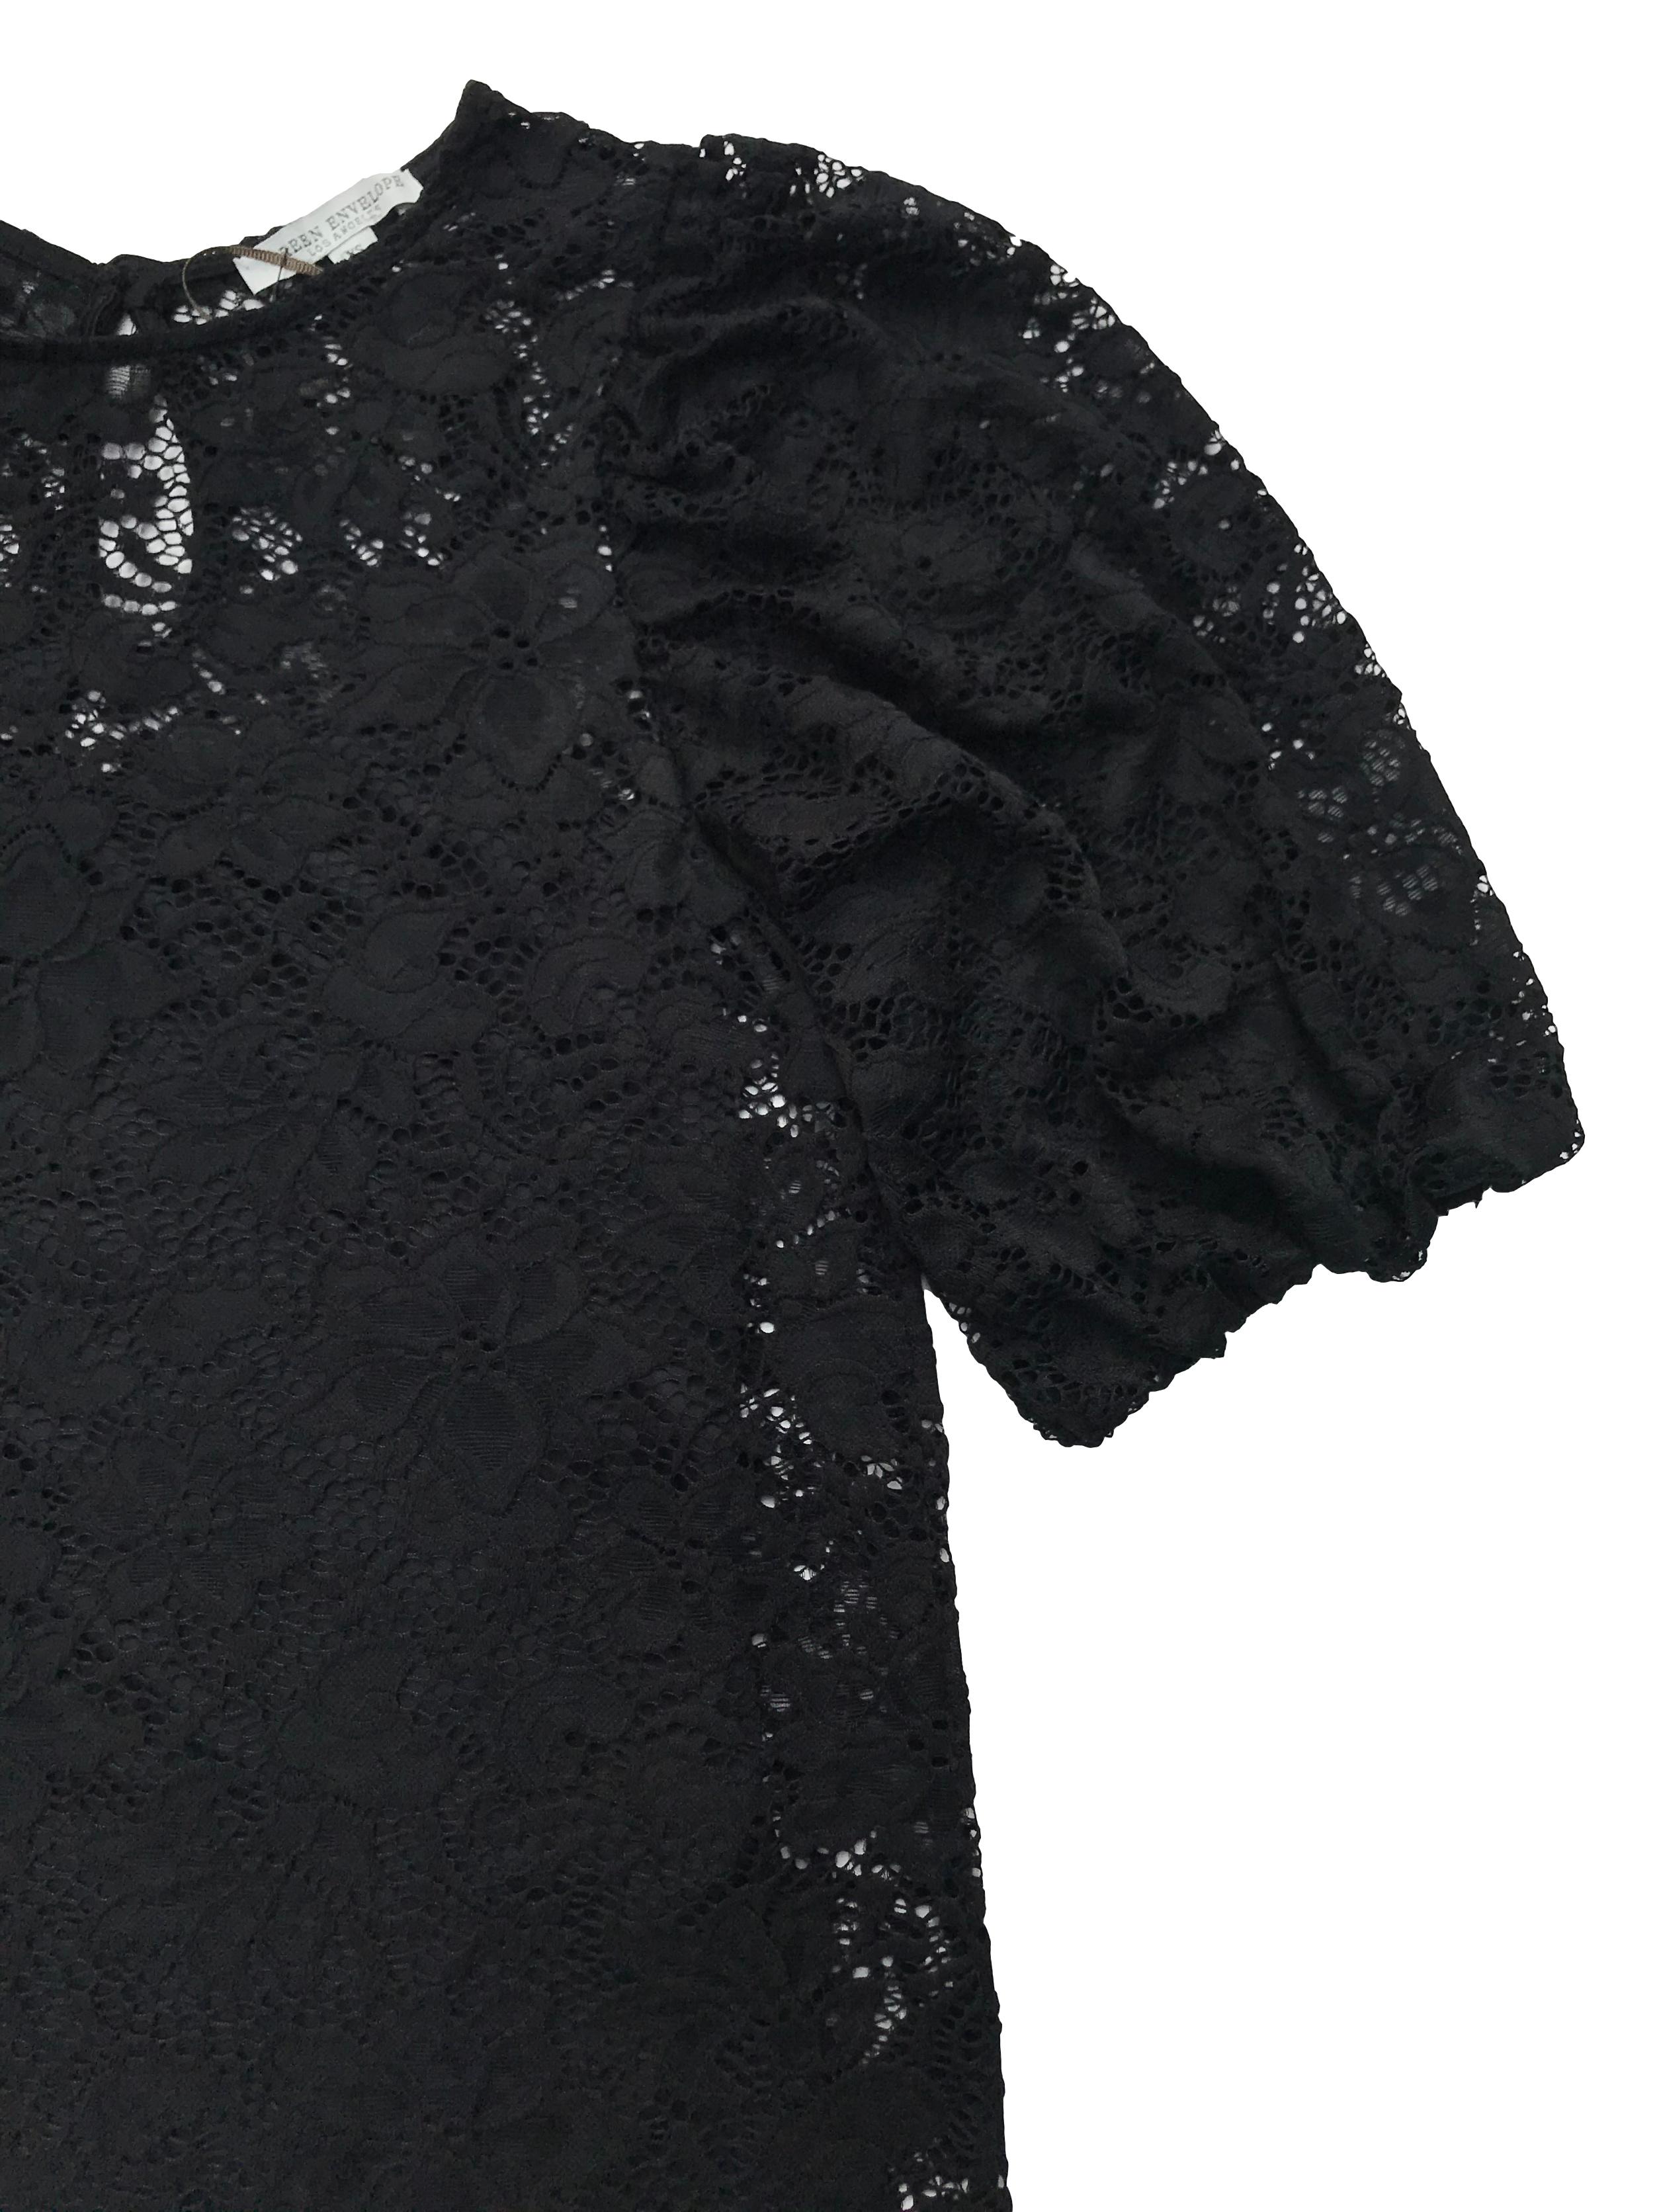 Blusa Green Envelope de encaje negro, con botón posterior en el cuello, manga abullonadas y forro de tiritas. Nuevo sin etiqueta, precio original 170